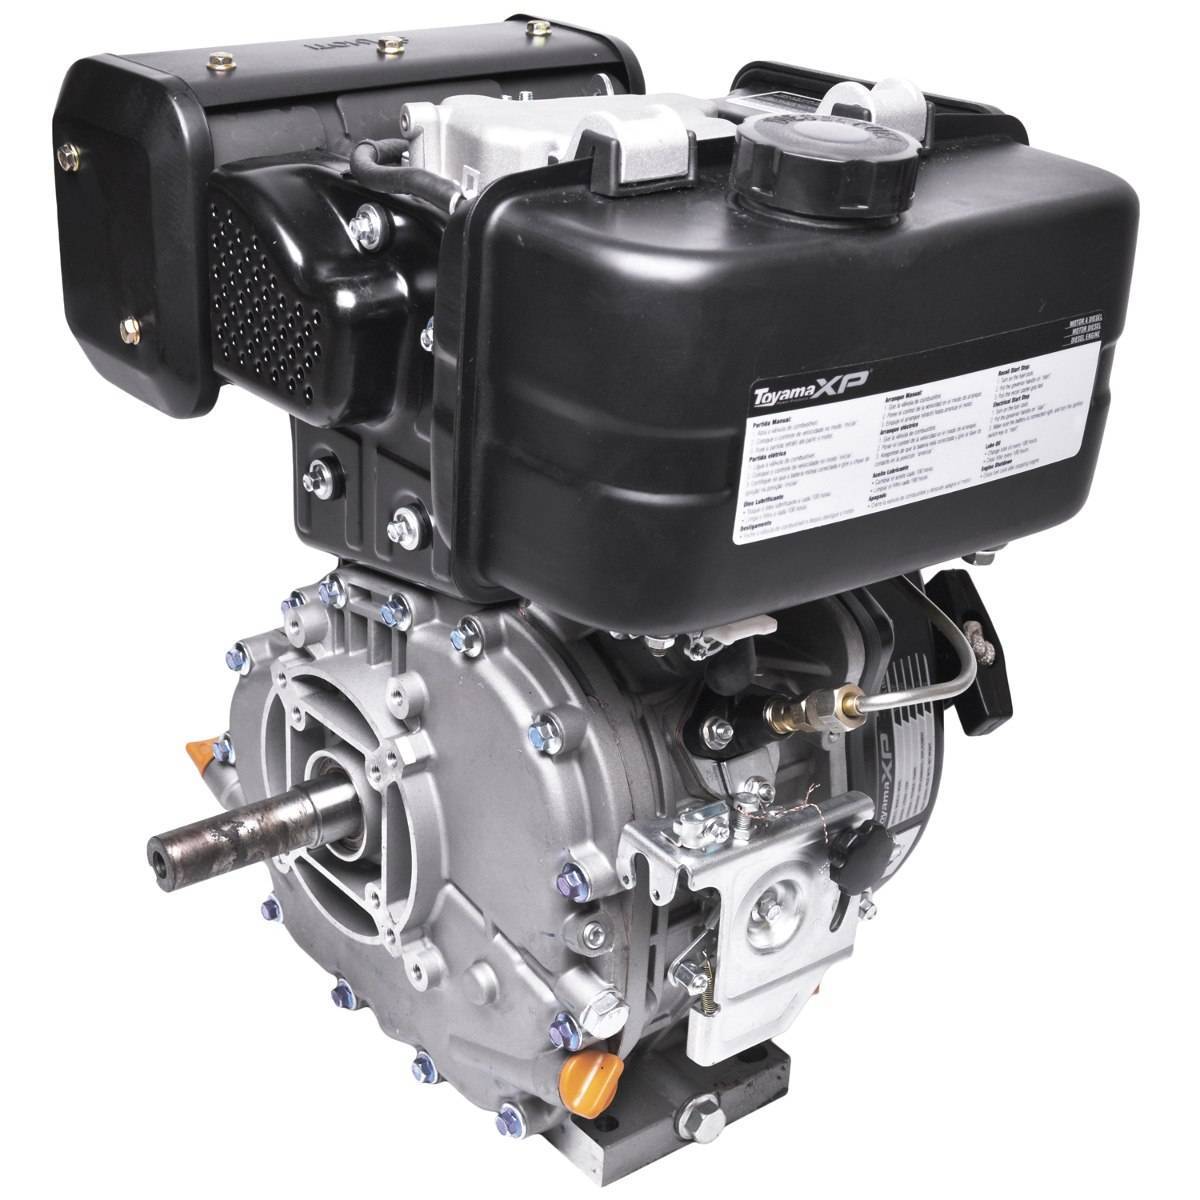 Motor TOYAMA 8 HP diesel c/ partida elétrica eixo 1